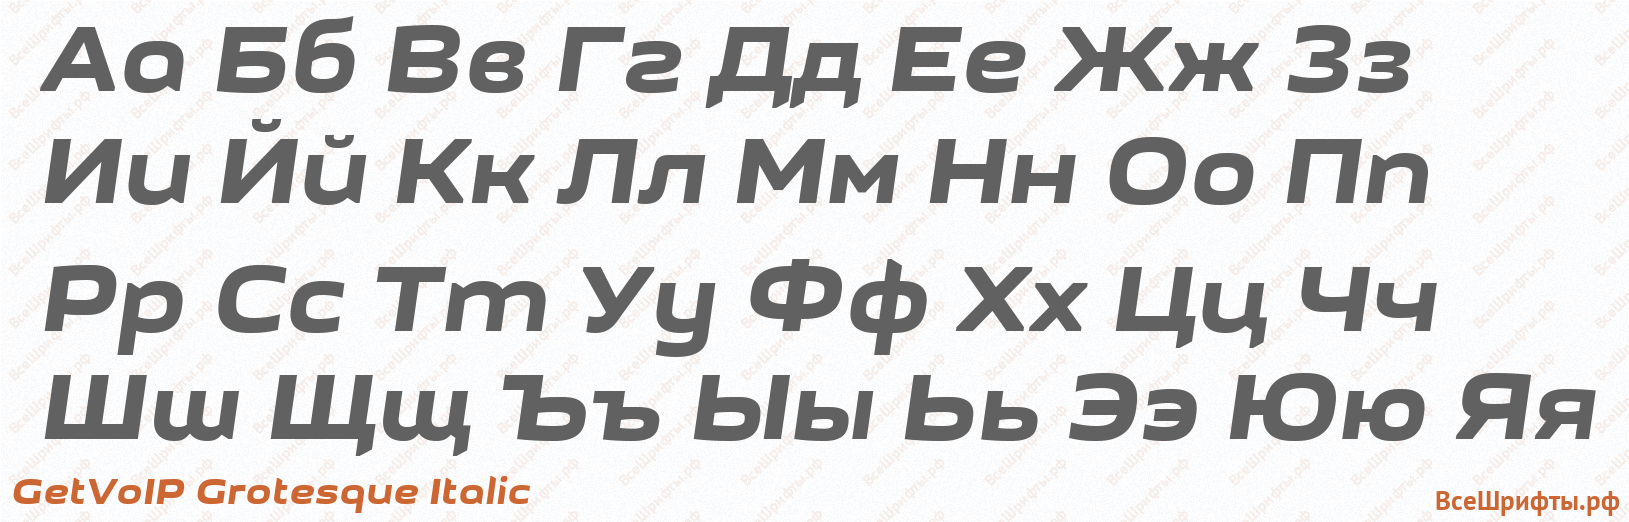 Шрифт GetVoIP Grotesque Italic с русскими буквами